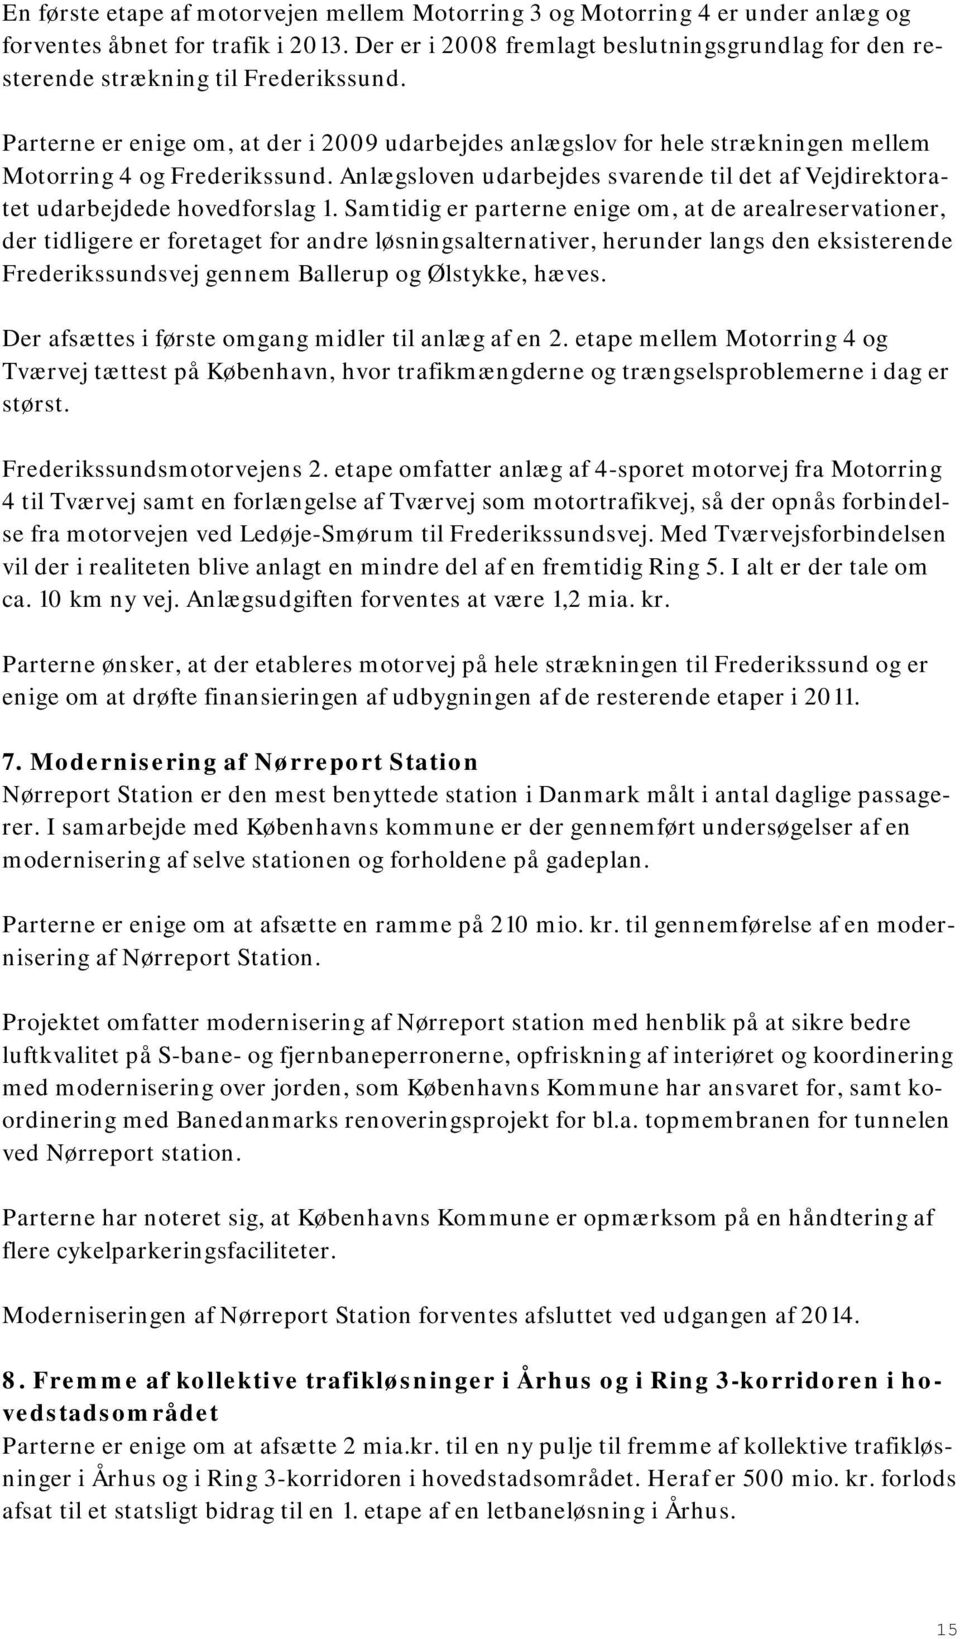 Parterne er enige om, at der i 2009 udarbejdes anlægslov for hele strækningen mellem Motorring 4 og Frederikssund.